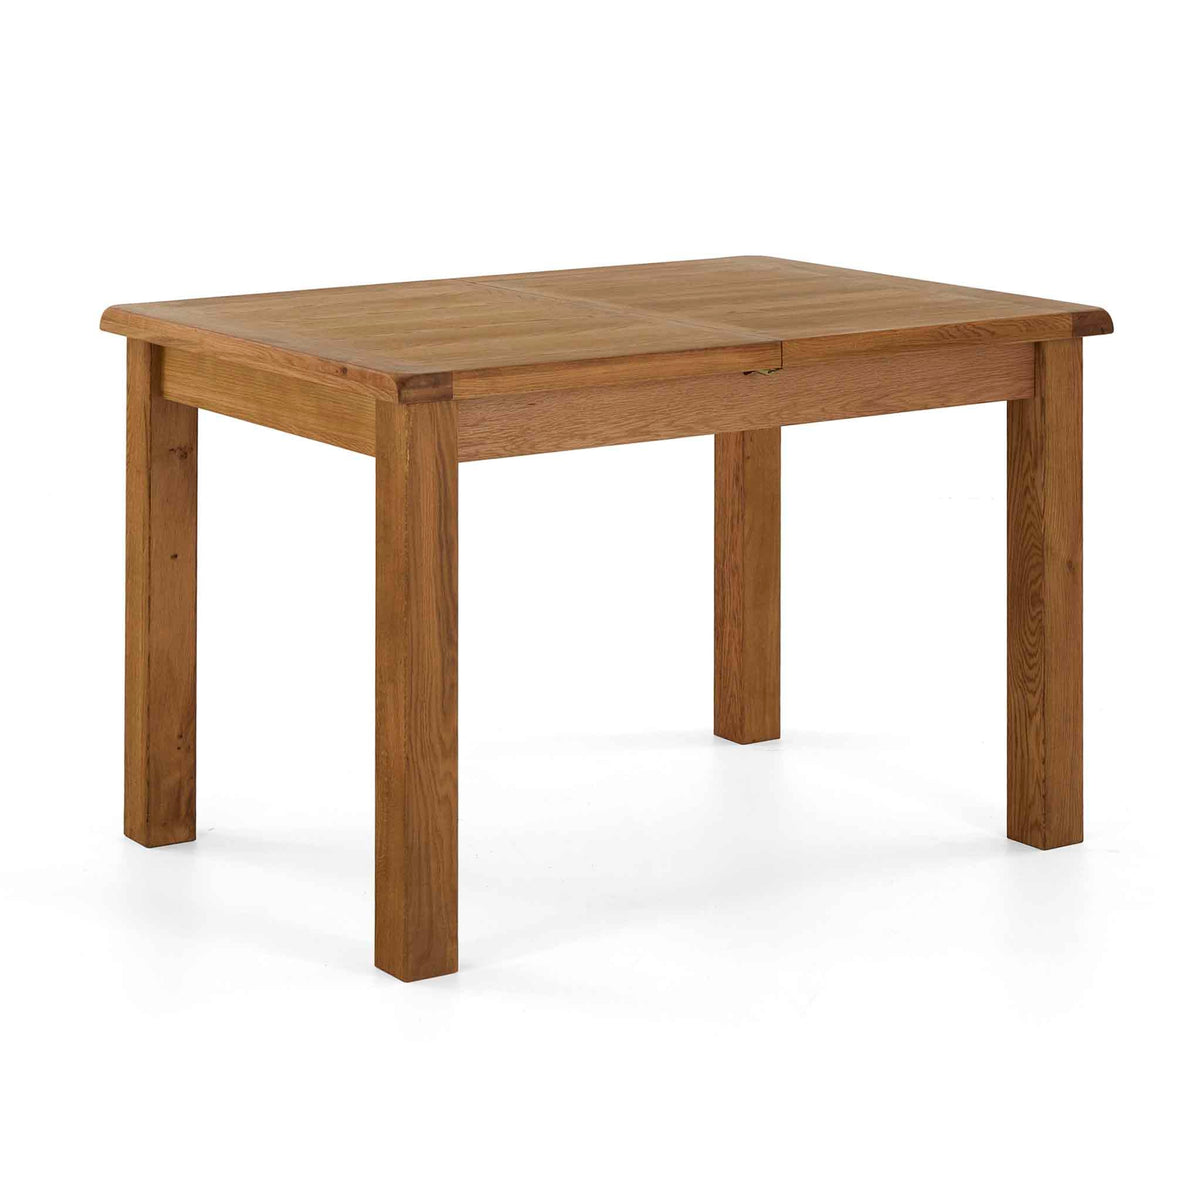 Zelah Oak 120-165cm Extending Dining Table by Roseland Furniture